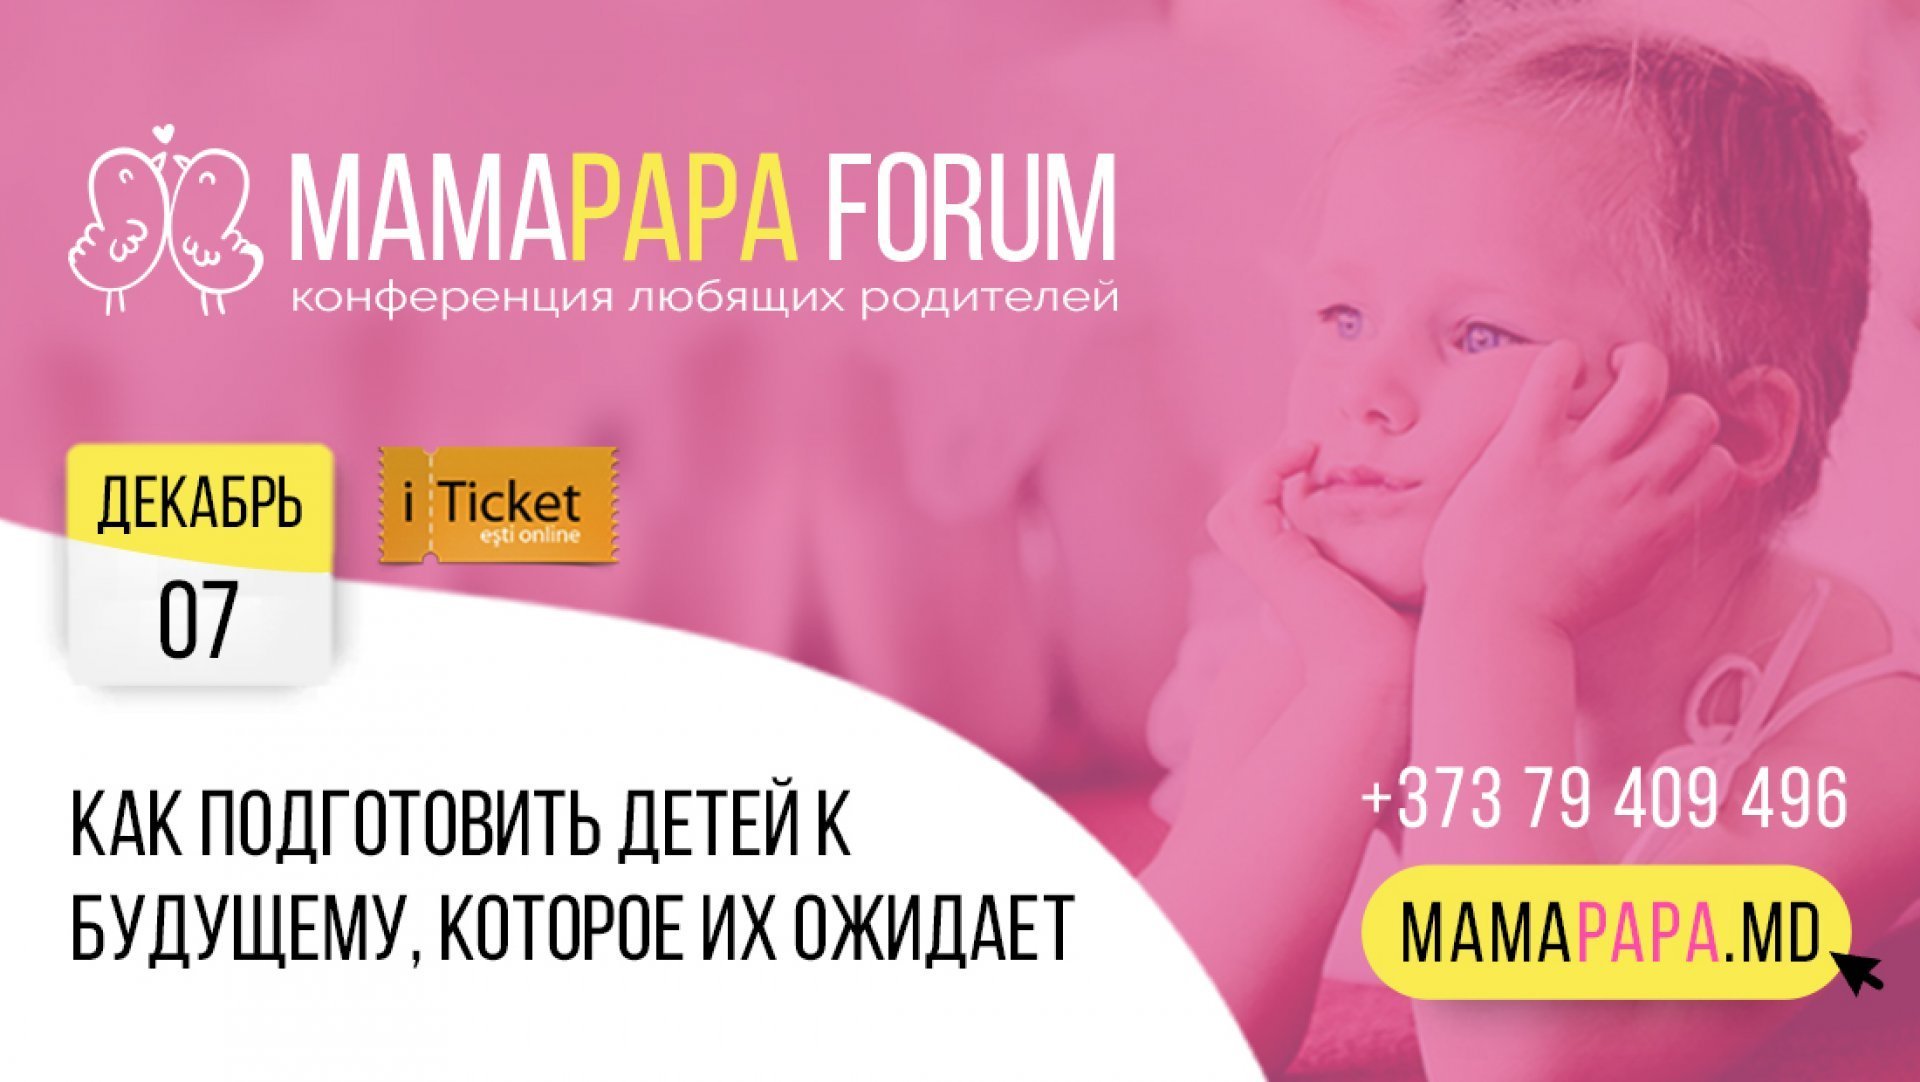 MamaPapa Forum 2019